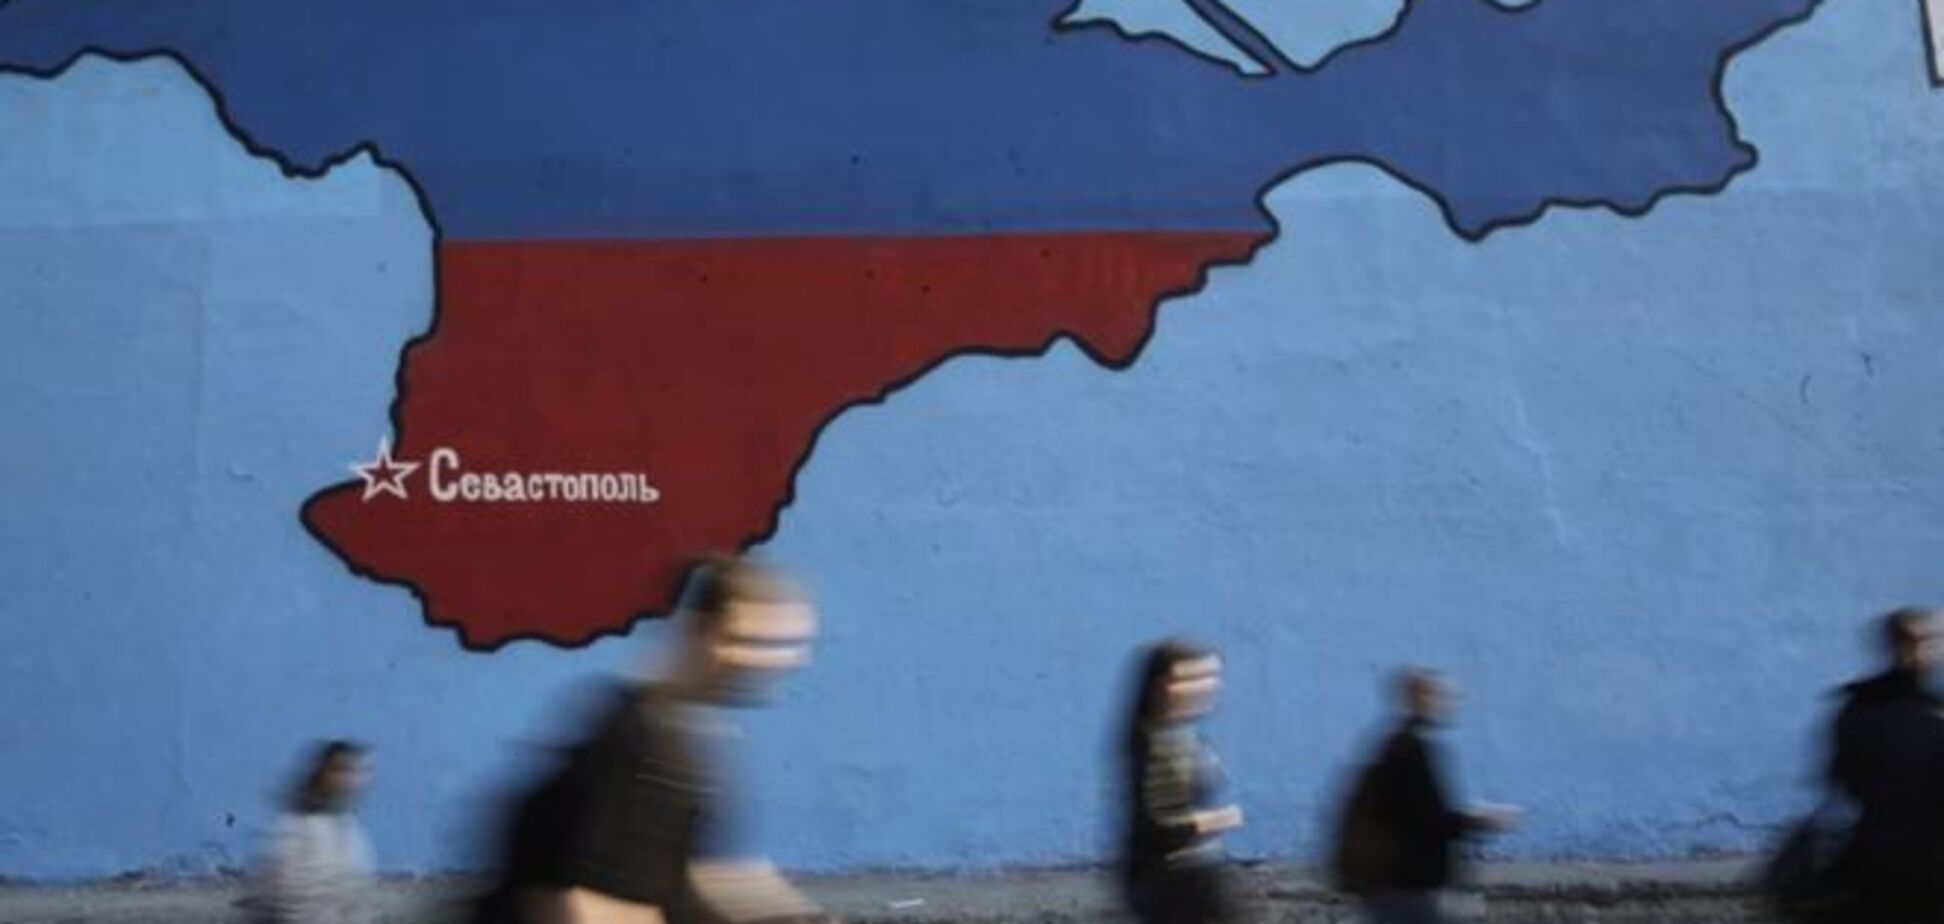 В Госдуме хотят денонсировать договор о границе с Украиной из-за Крыма